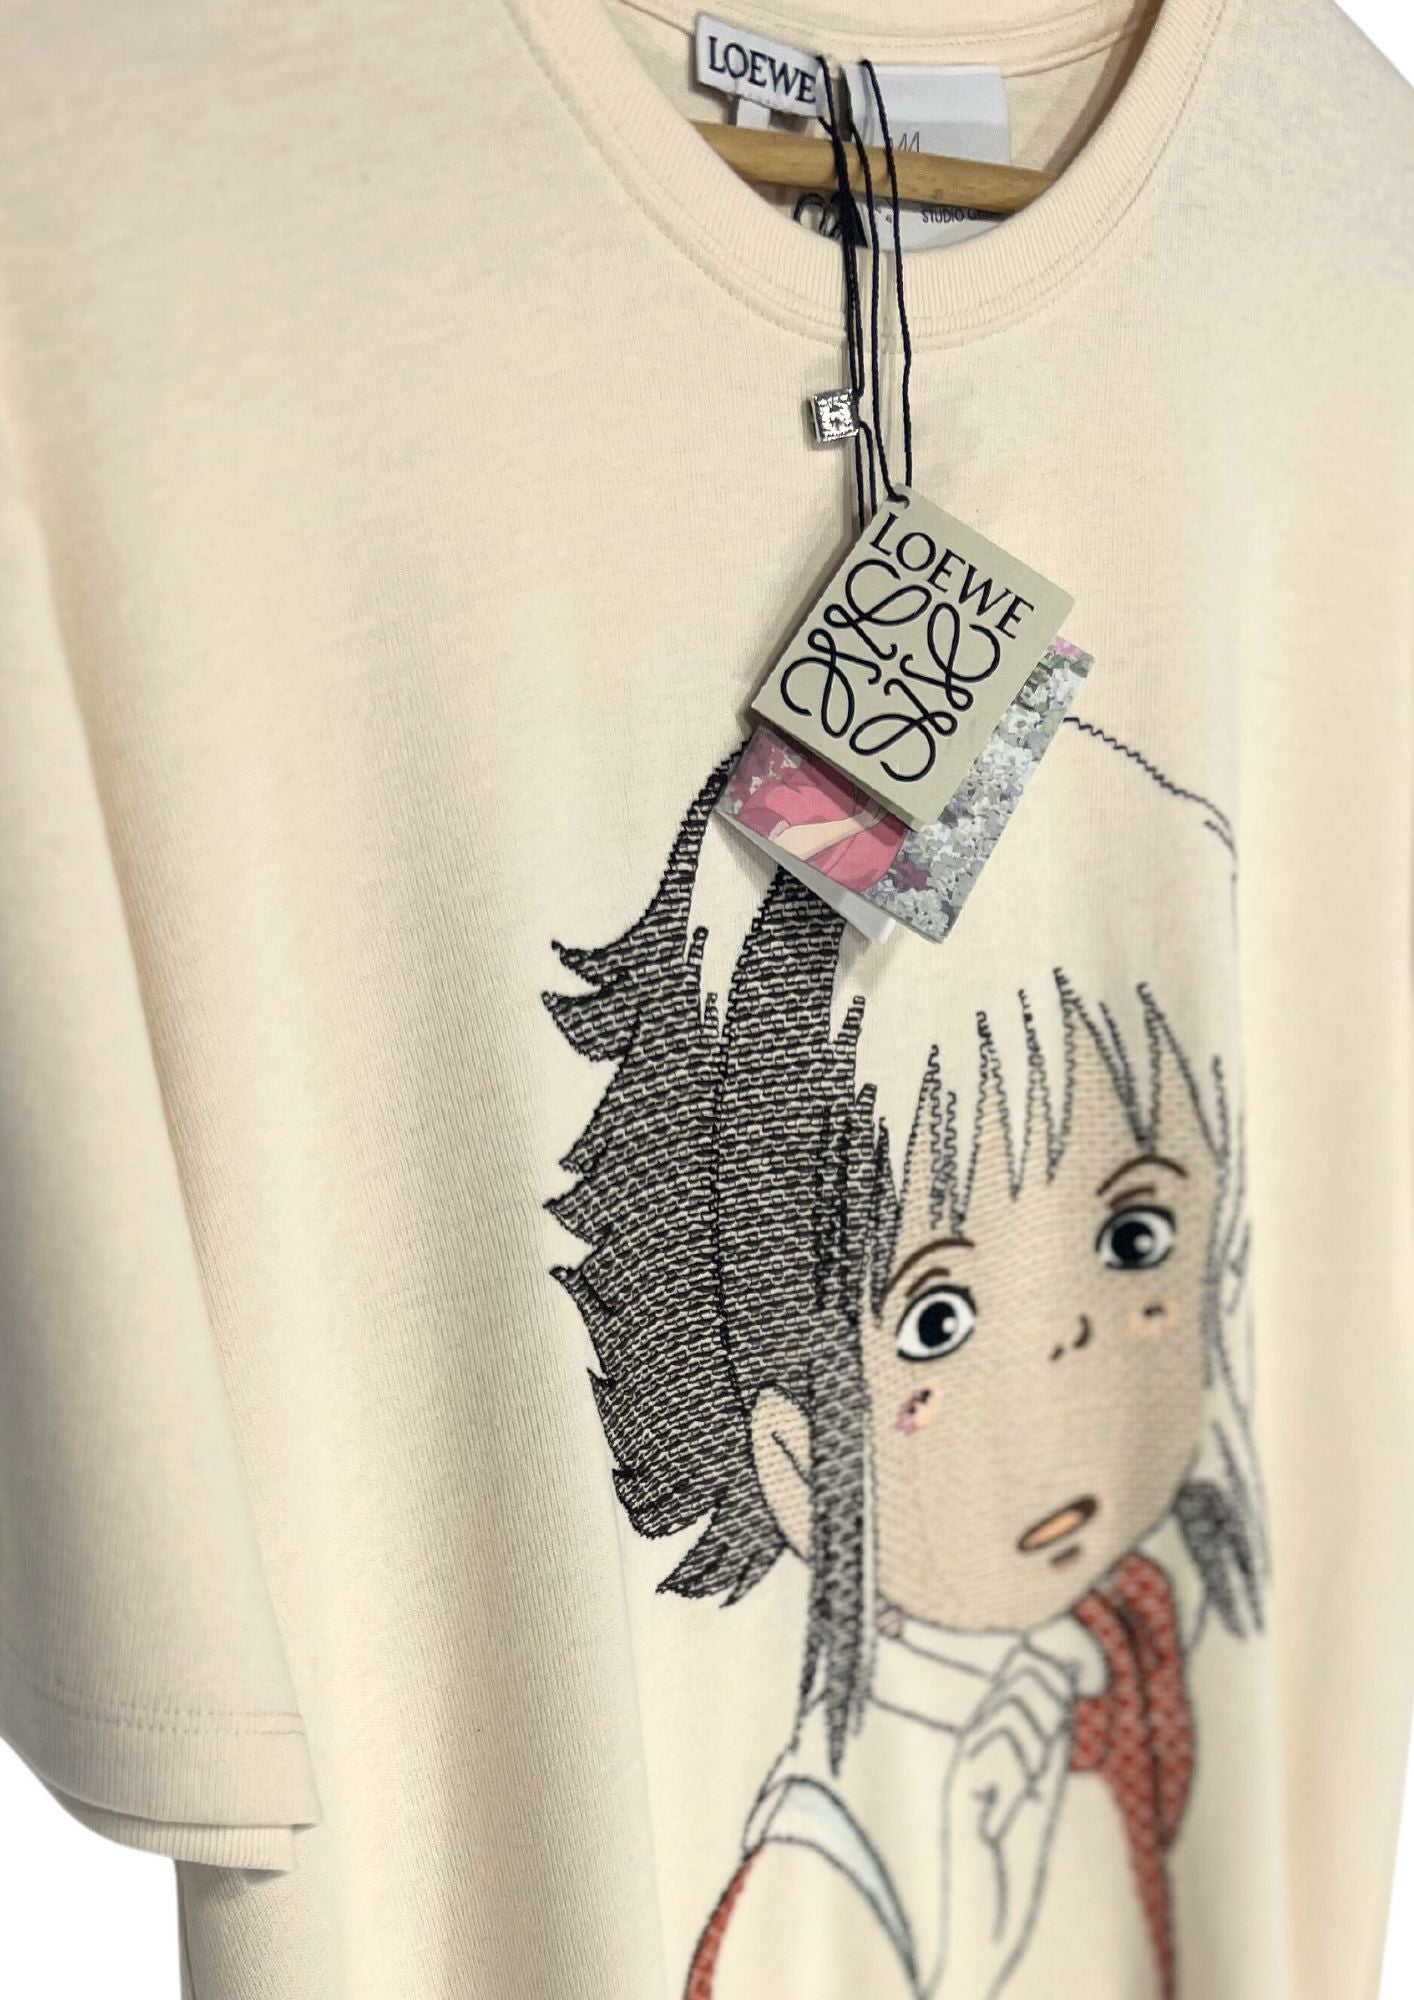 2021 Spirited Away x Loewe Chihiro Embroidered T-shirt